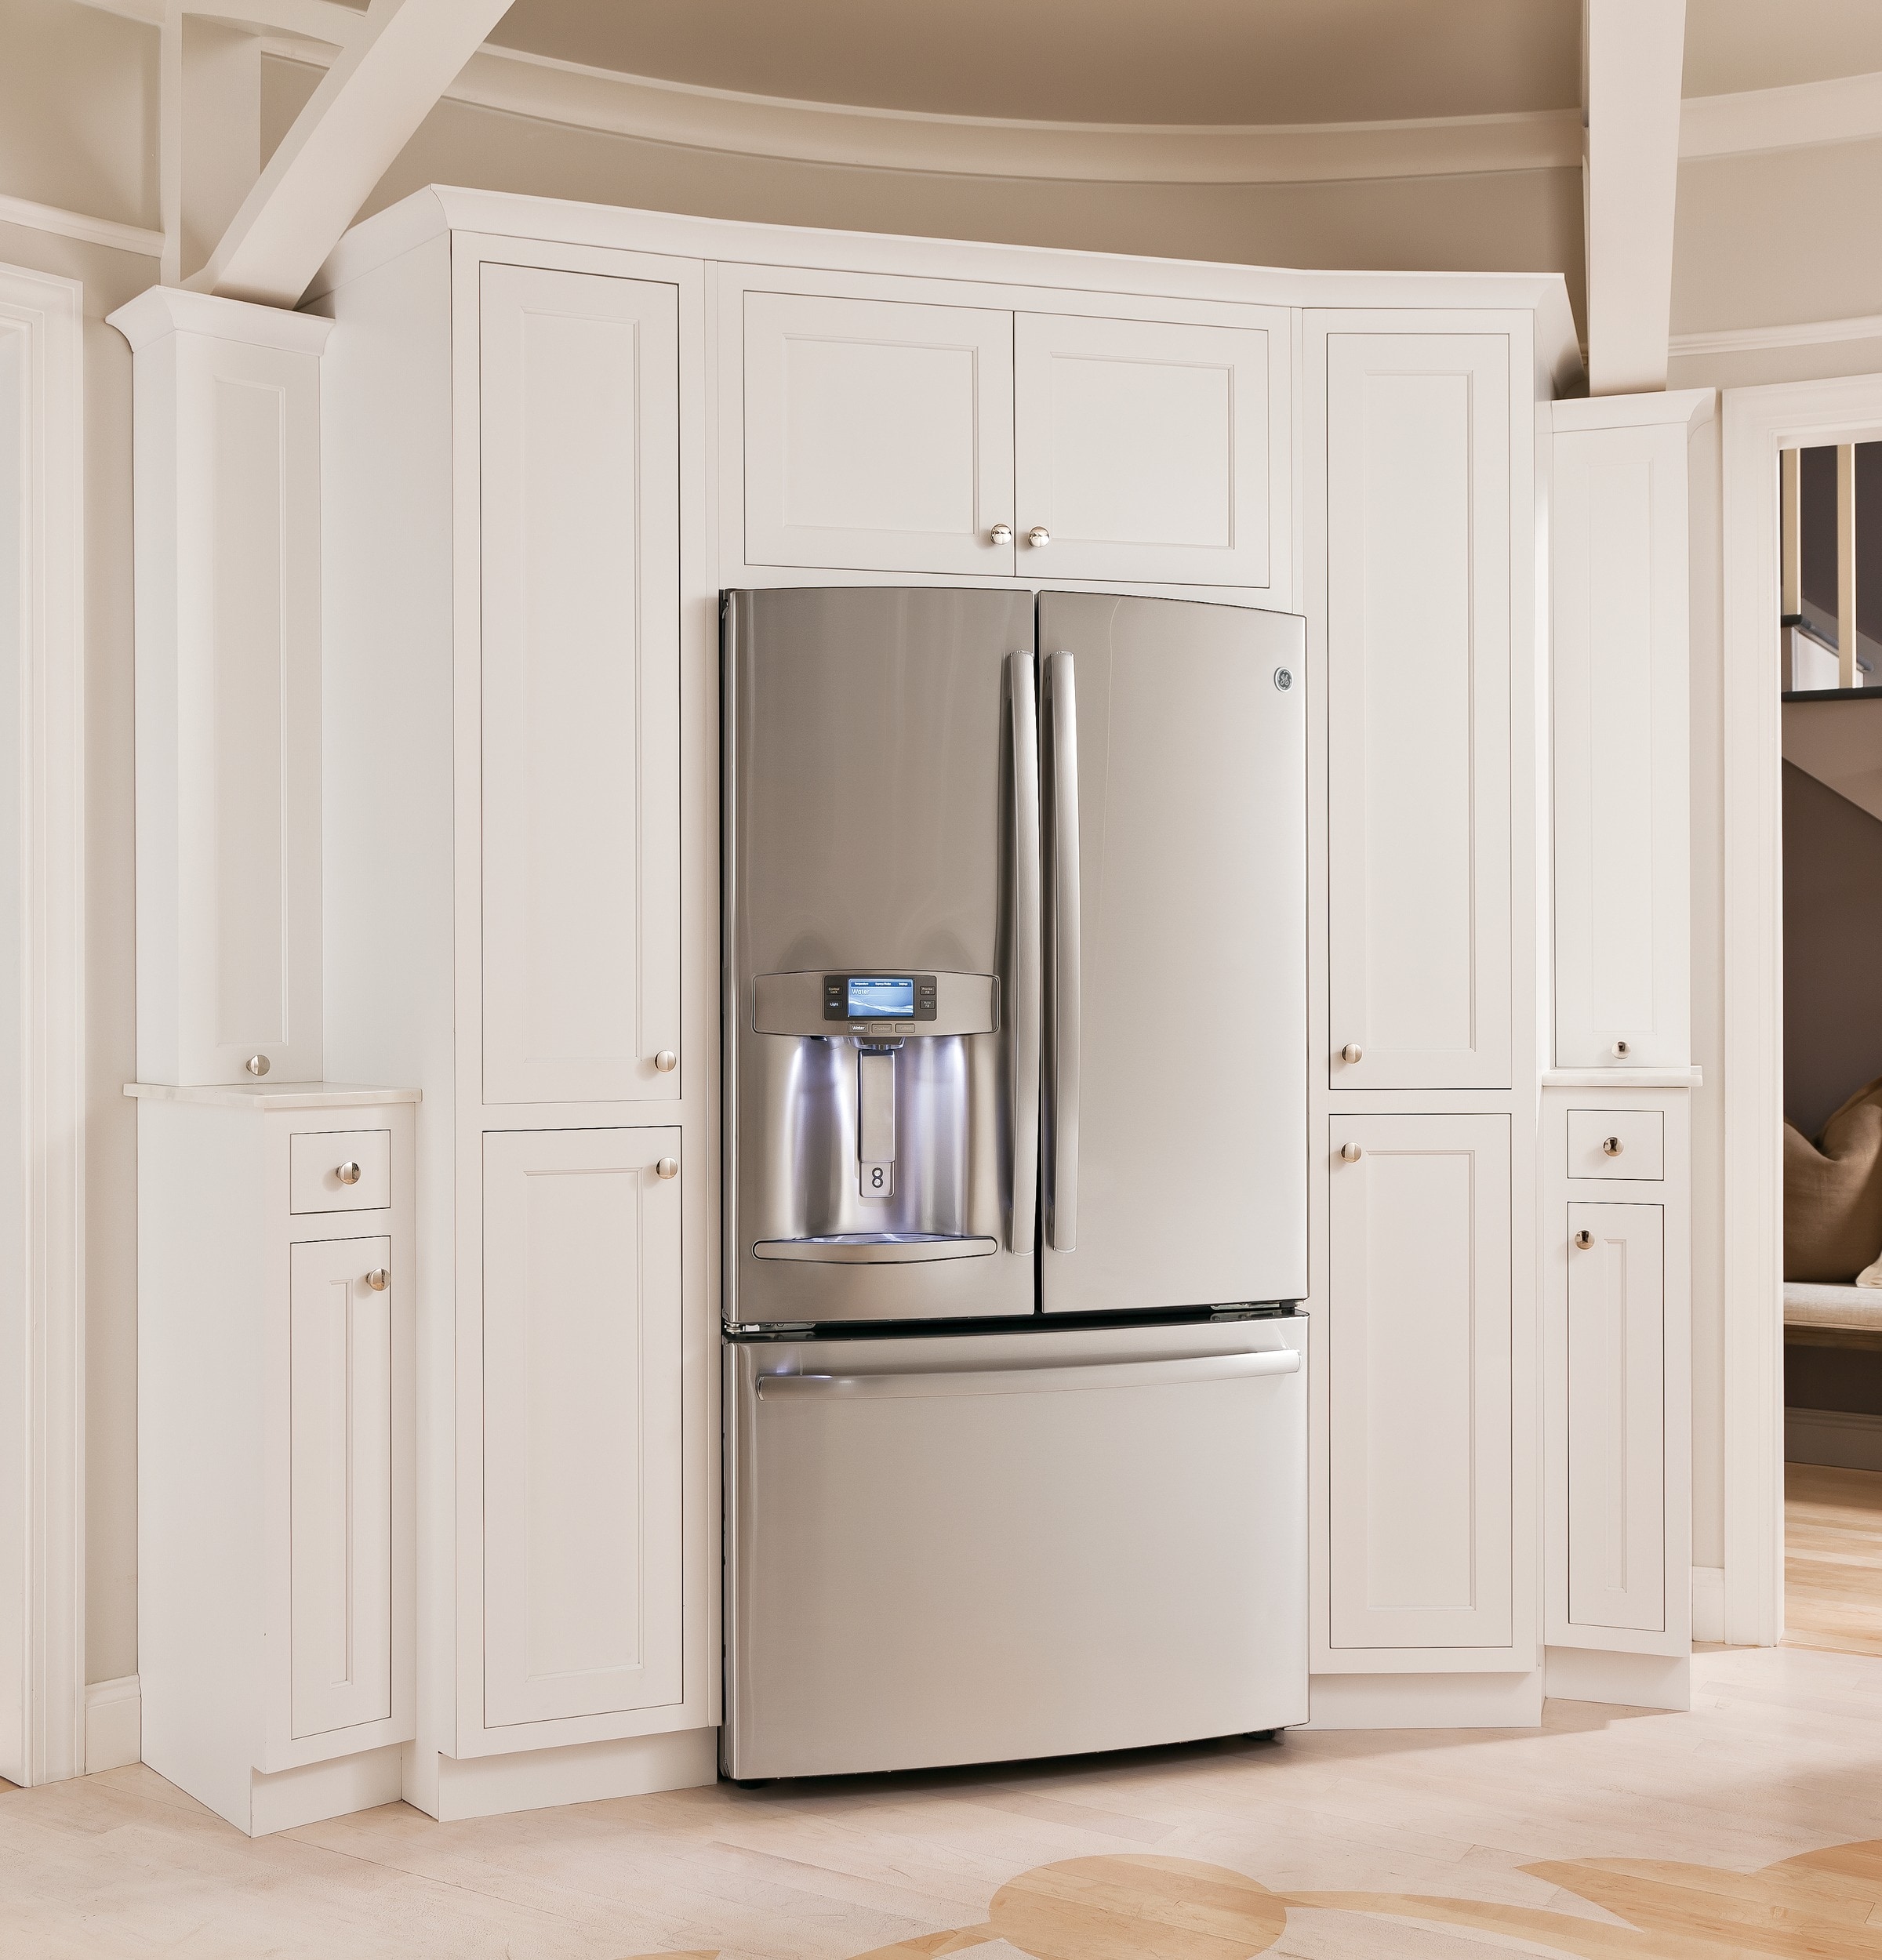 GE Profile Profile 22.1 cu. ft. French Door Refrigerator with Door